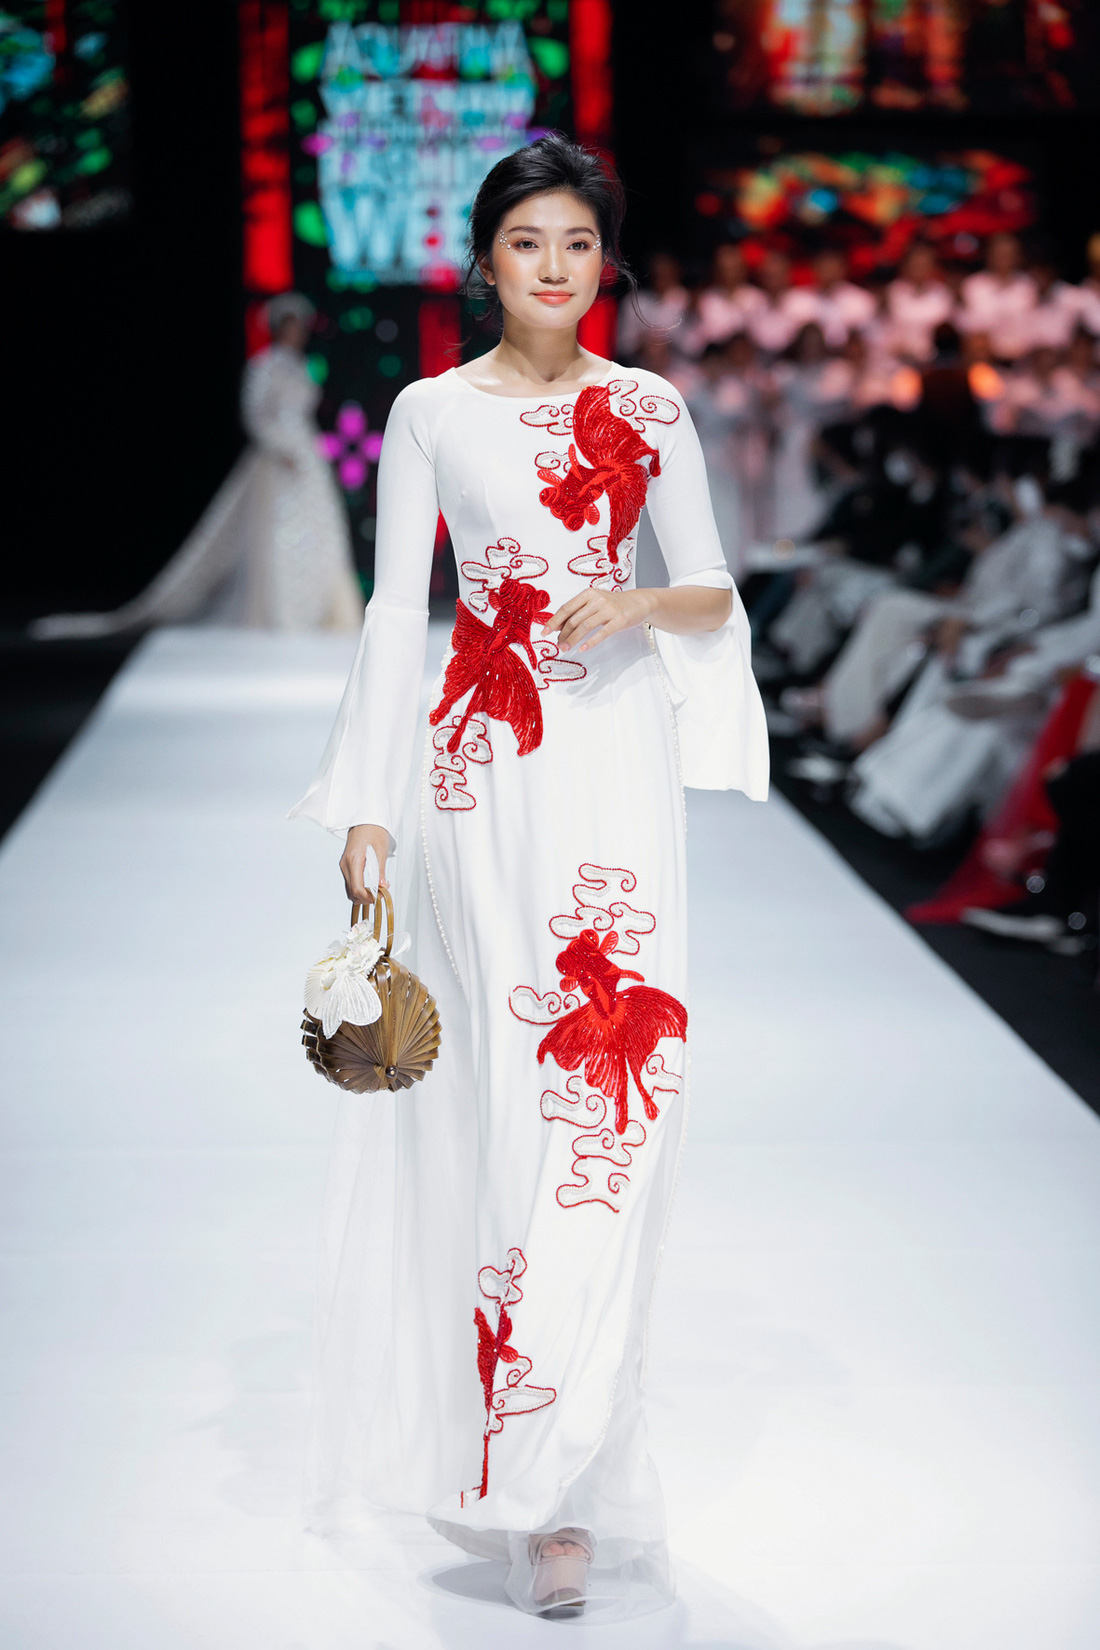 Hoa hậu Khánh Vân làm vedette, NSND Hồng Vân làm người mẫu catwalk cho nhà thiết kế Minh Châu - Ảnh 11.